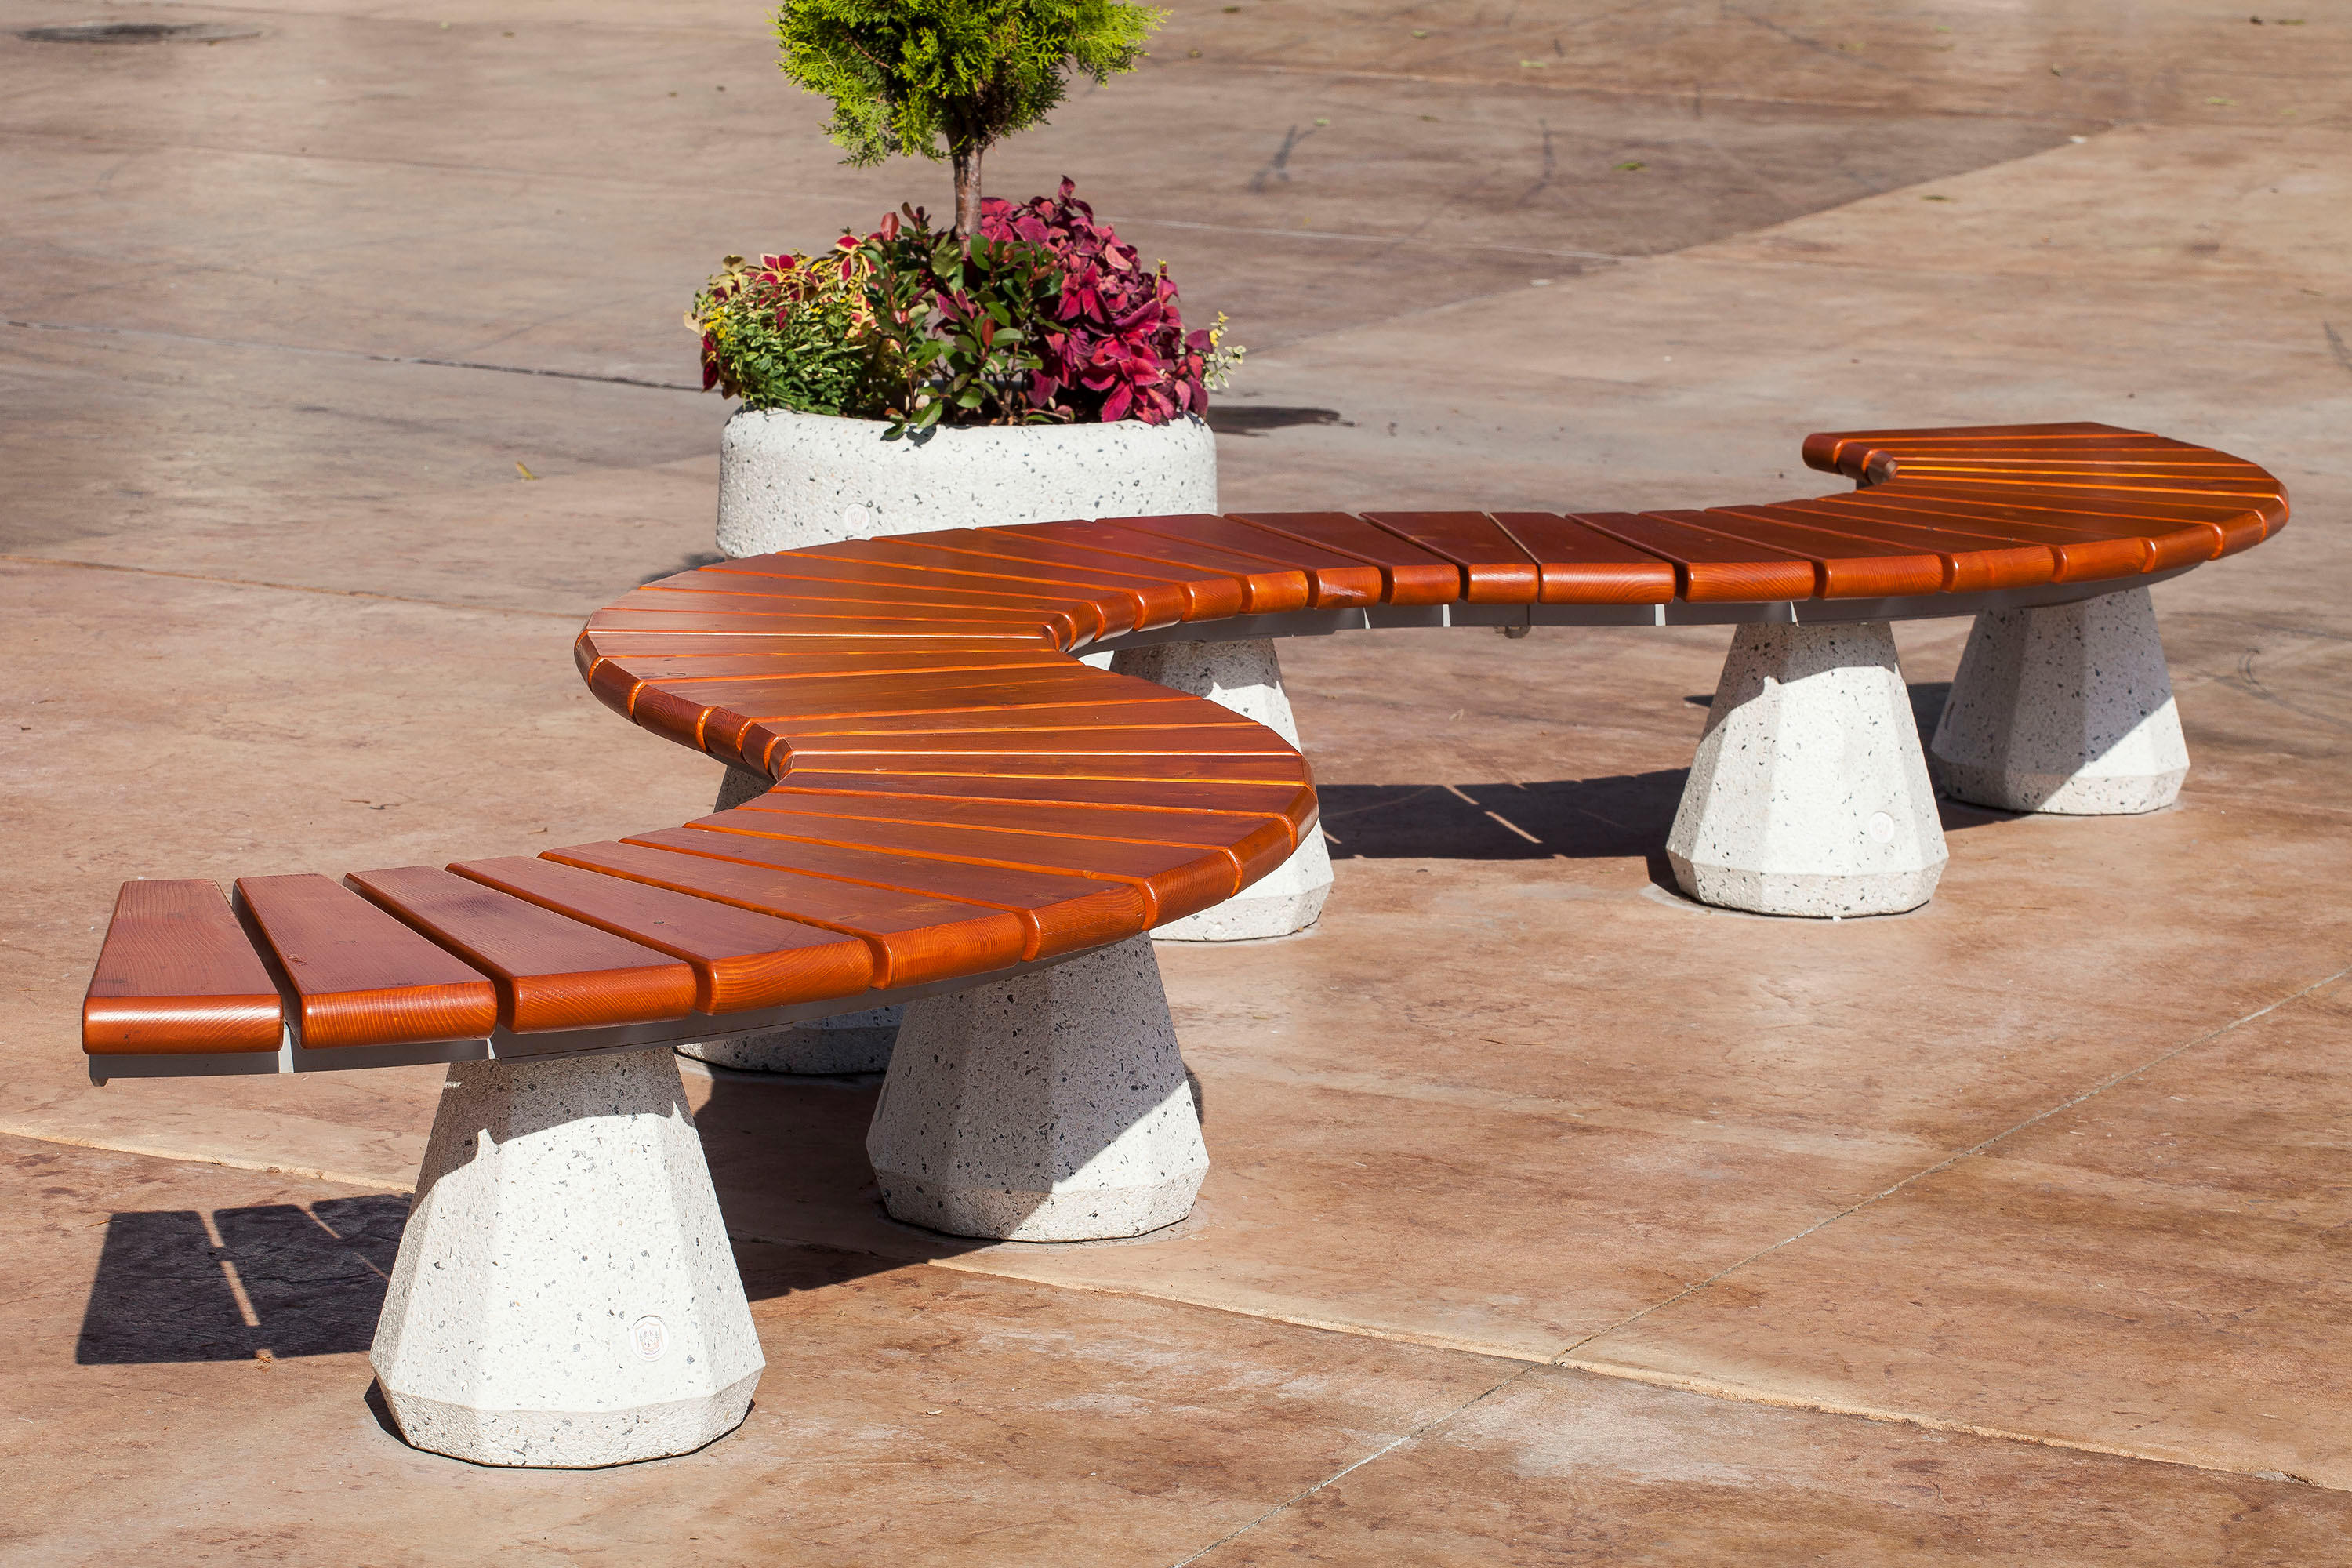 Concrete Bench 2 & designer furniture | Architonic